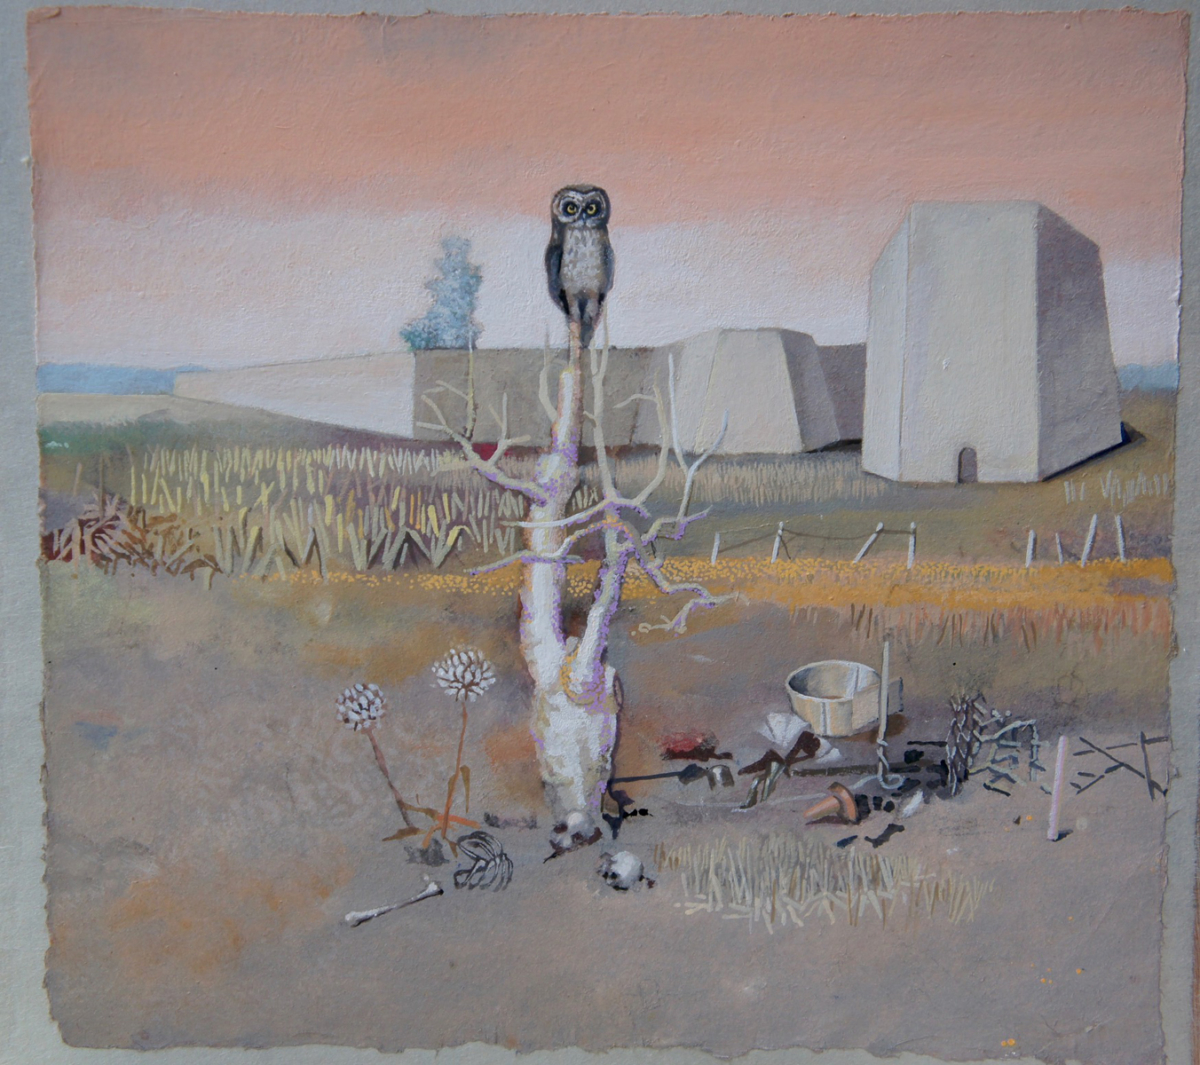 la chouette et le joli squelette, 2020 peinture détrempe sur papier marouflé 28,5 x 31 cm DP229 © Denis Polge 